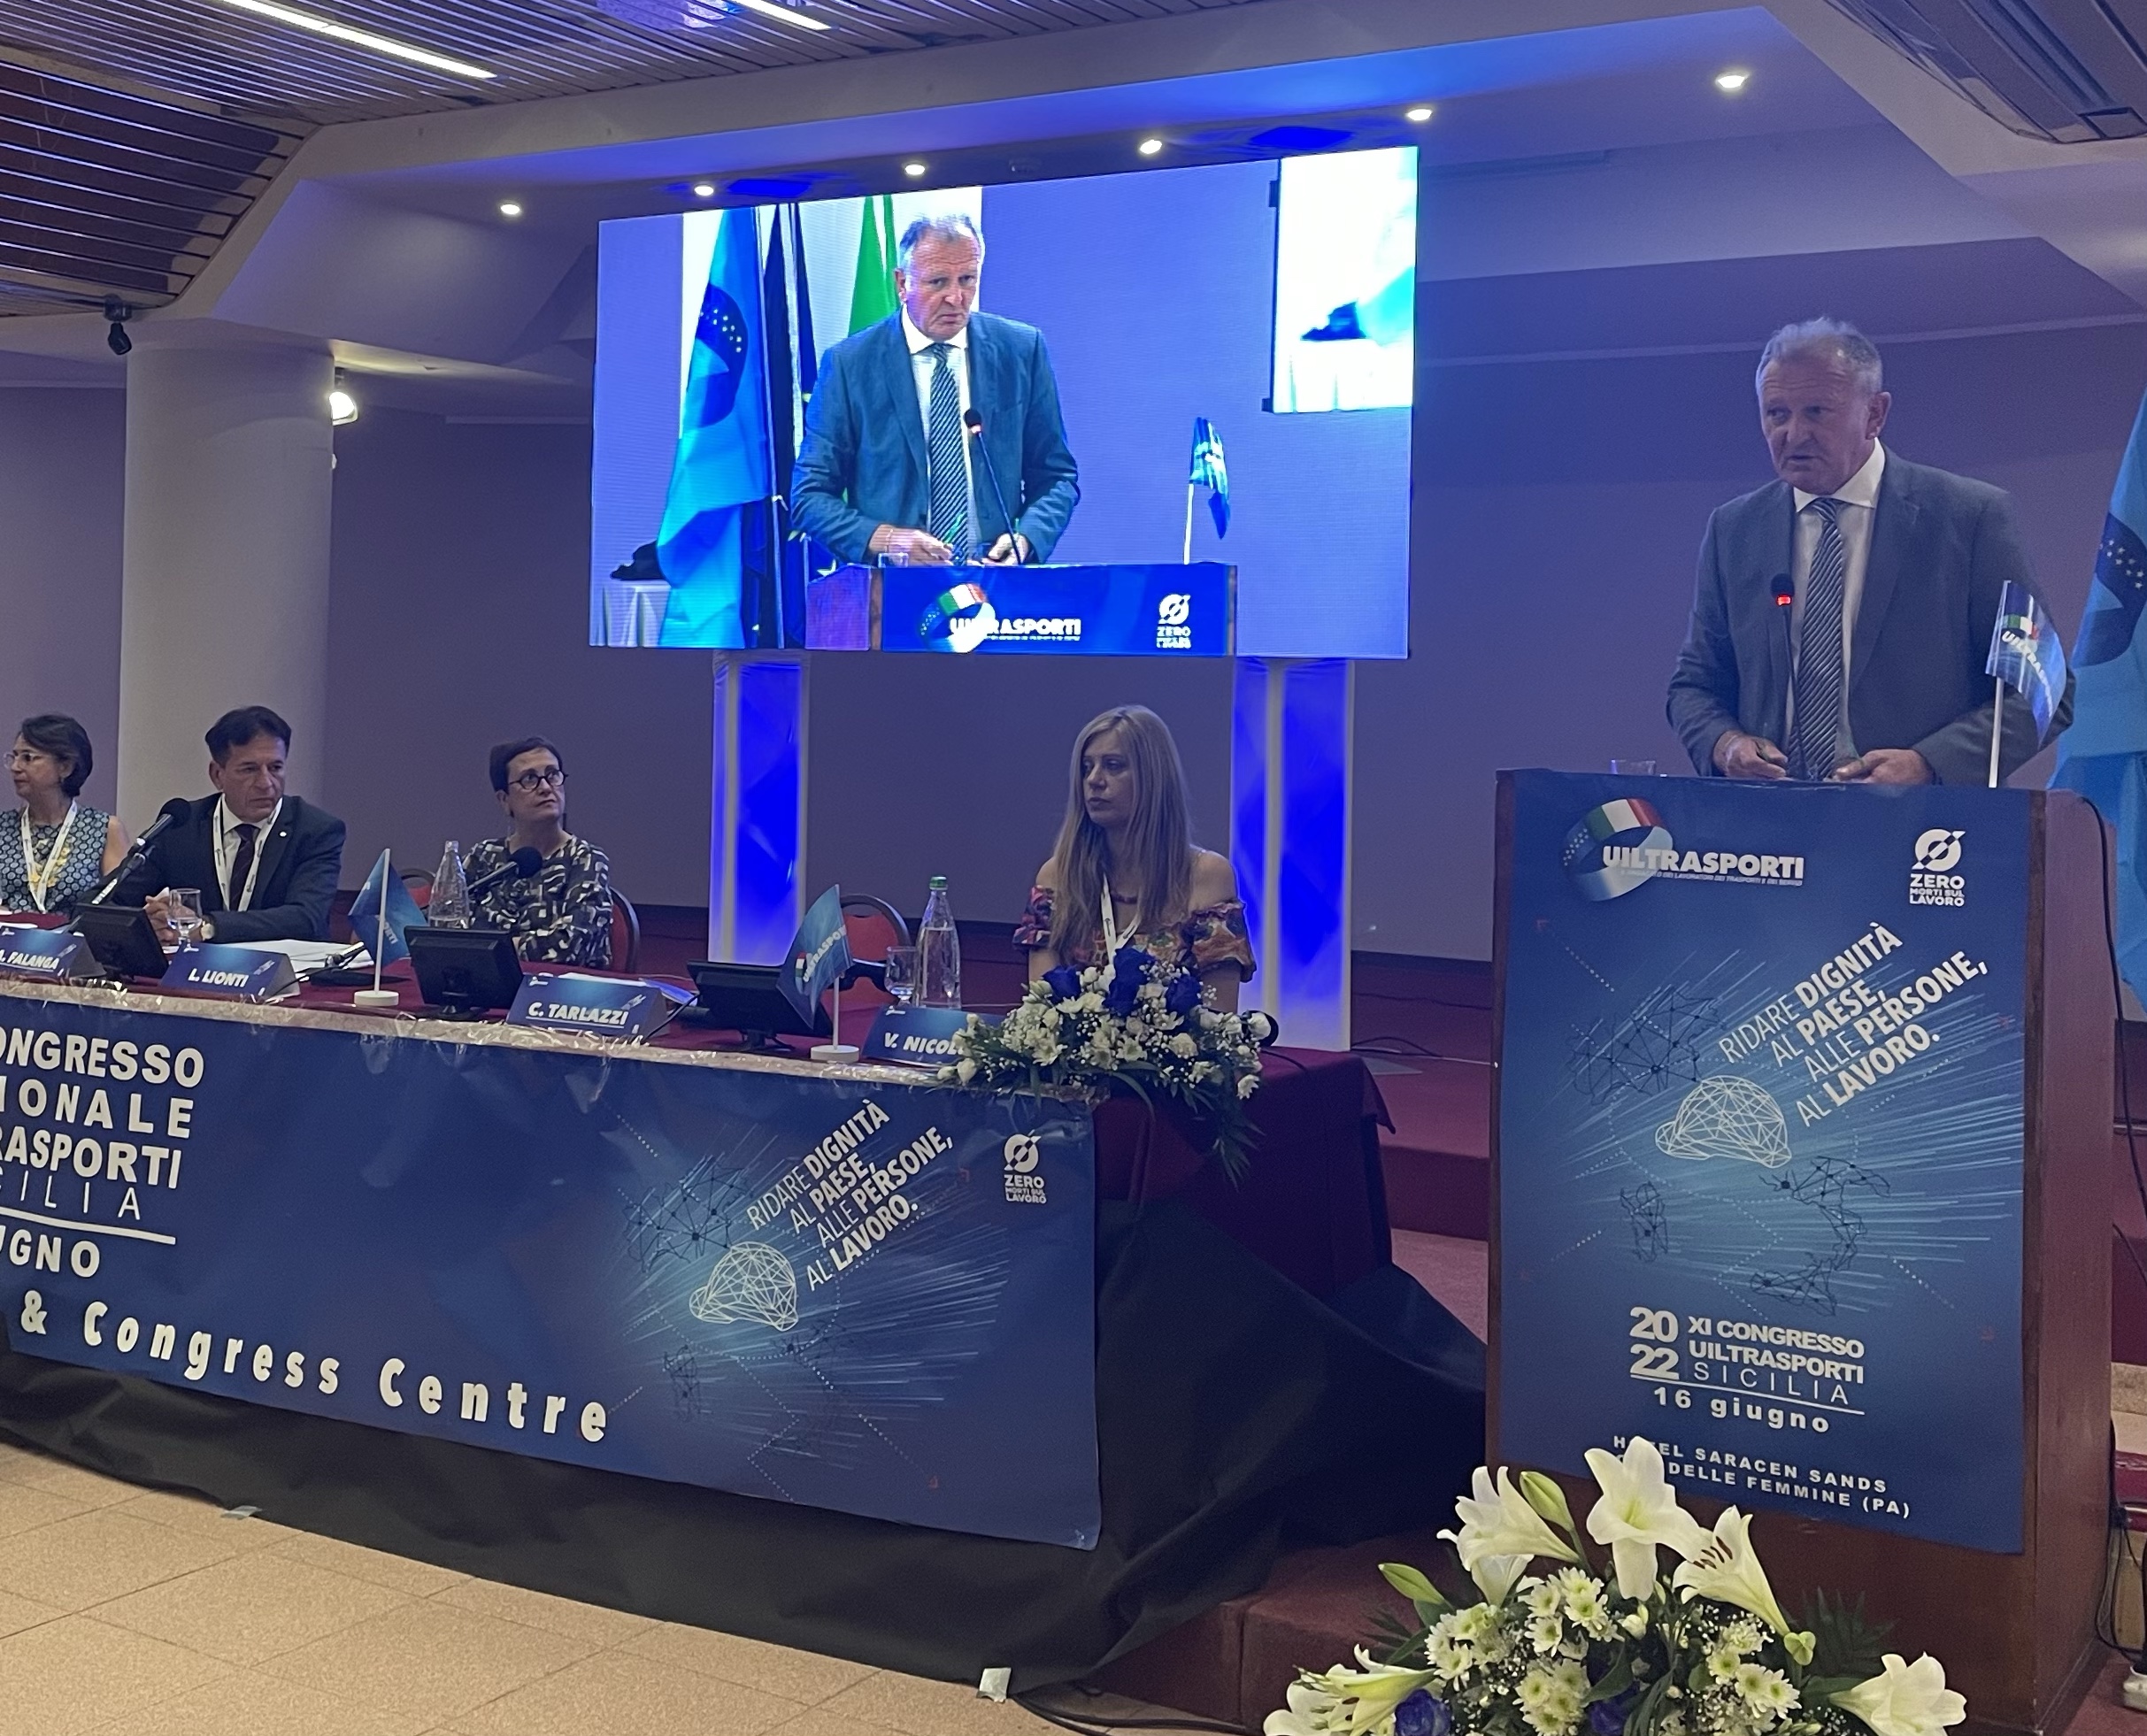 Congresso regionale Uiltrasporti Sicilia, Agostino Falanga rieletto Segretario Generale regionale